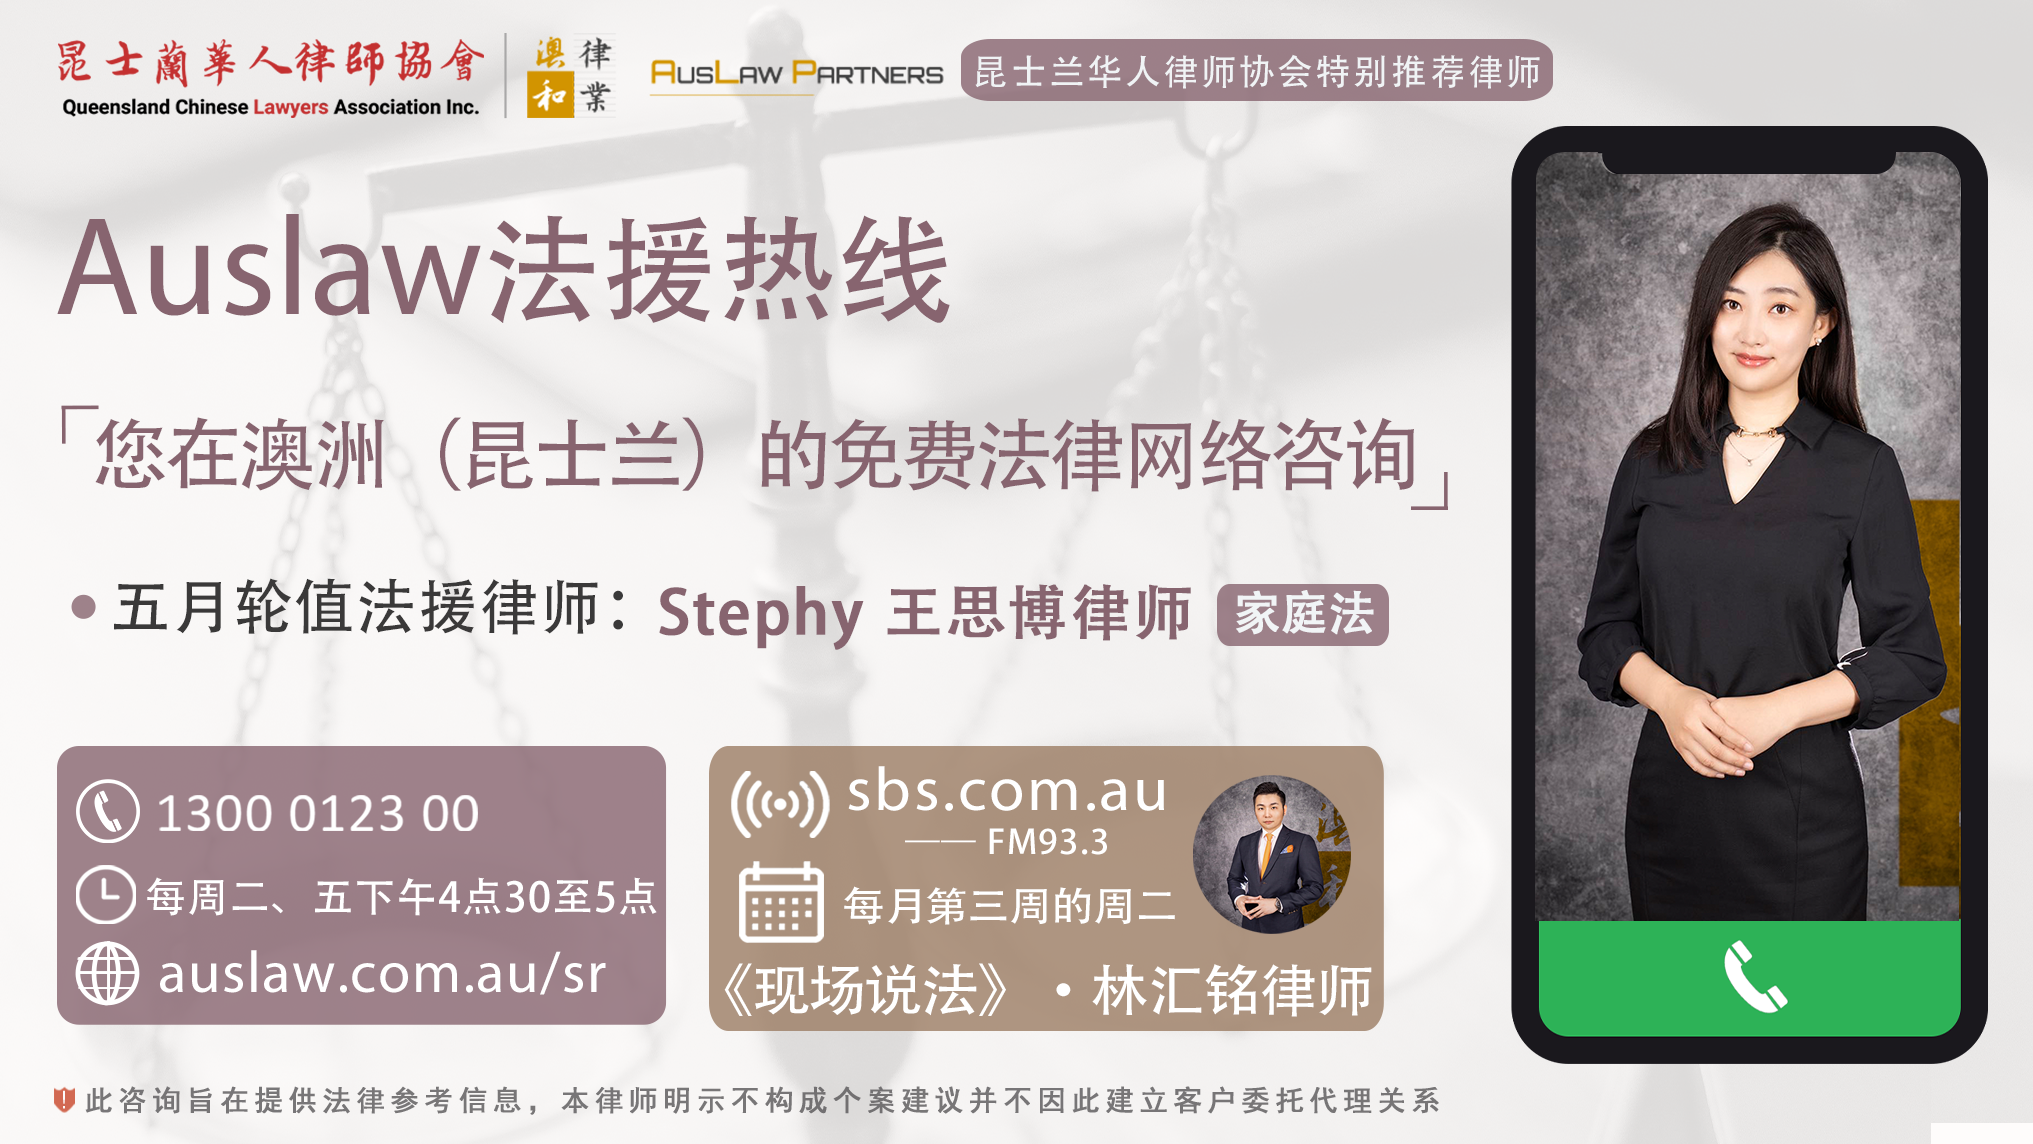 (中文) 公益法援火热接线中 | 5月推荐：Stephy 王思博律师 @Auslaw